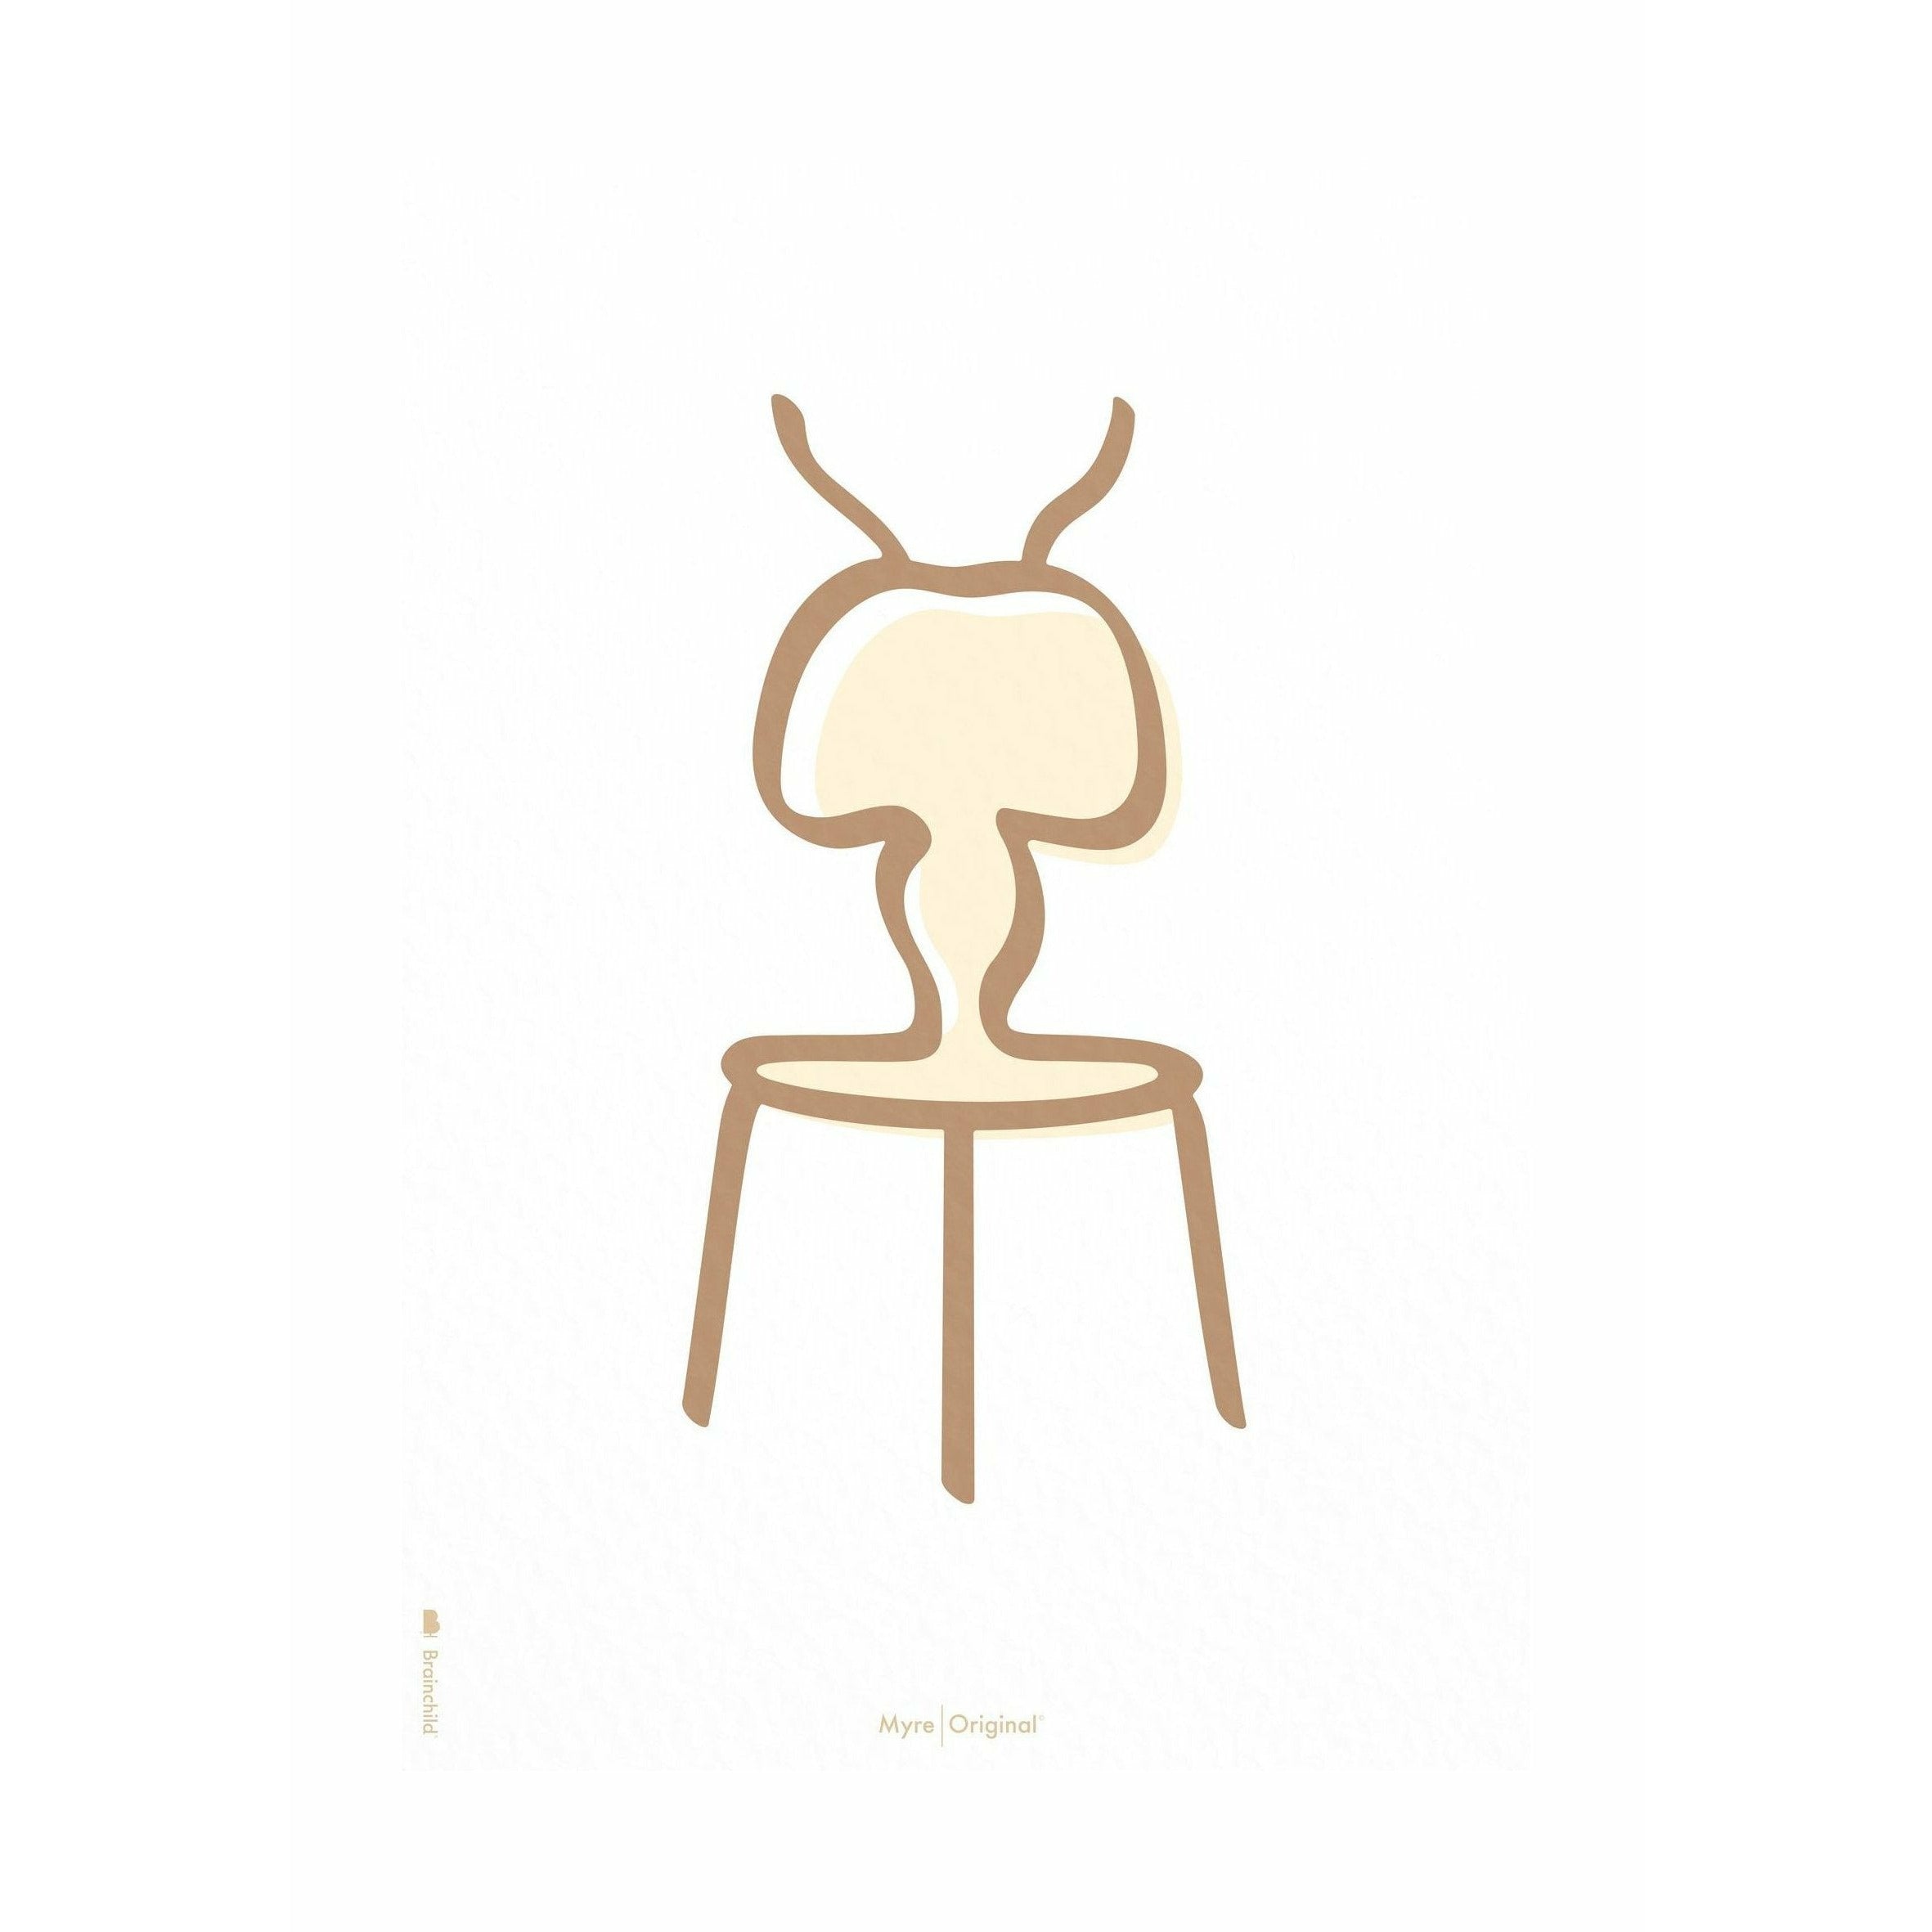 Plakát Ant Line Brainchild bez rámu A5, bílé pozadí